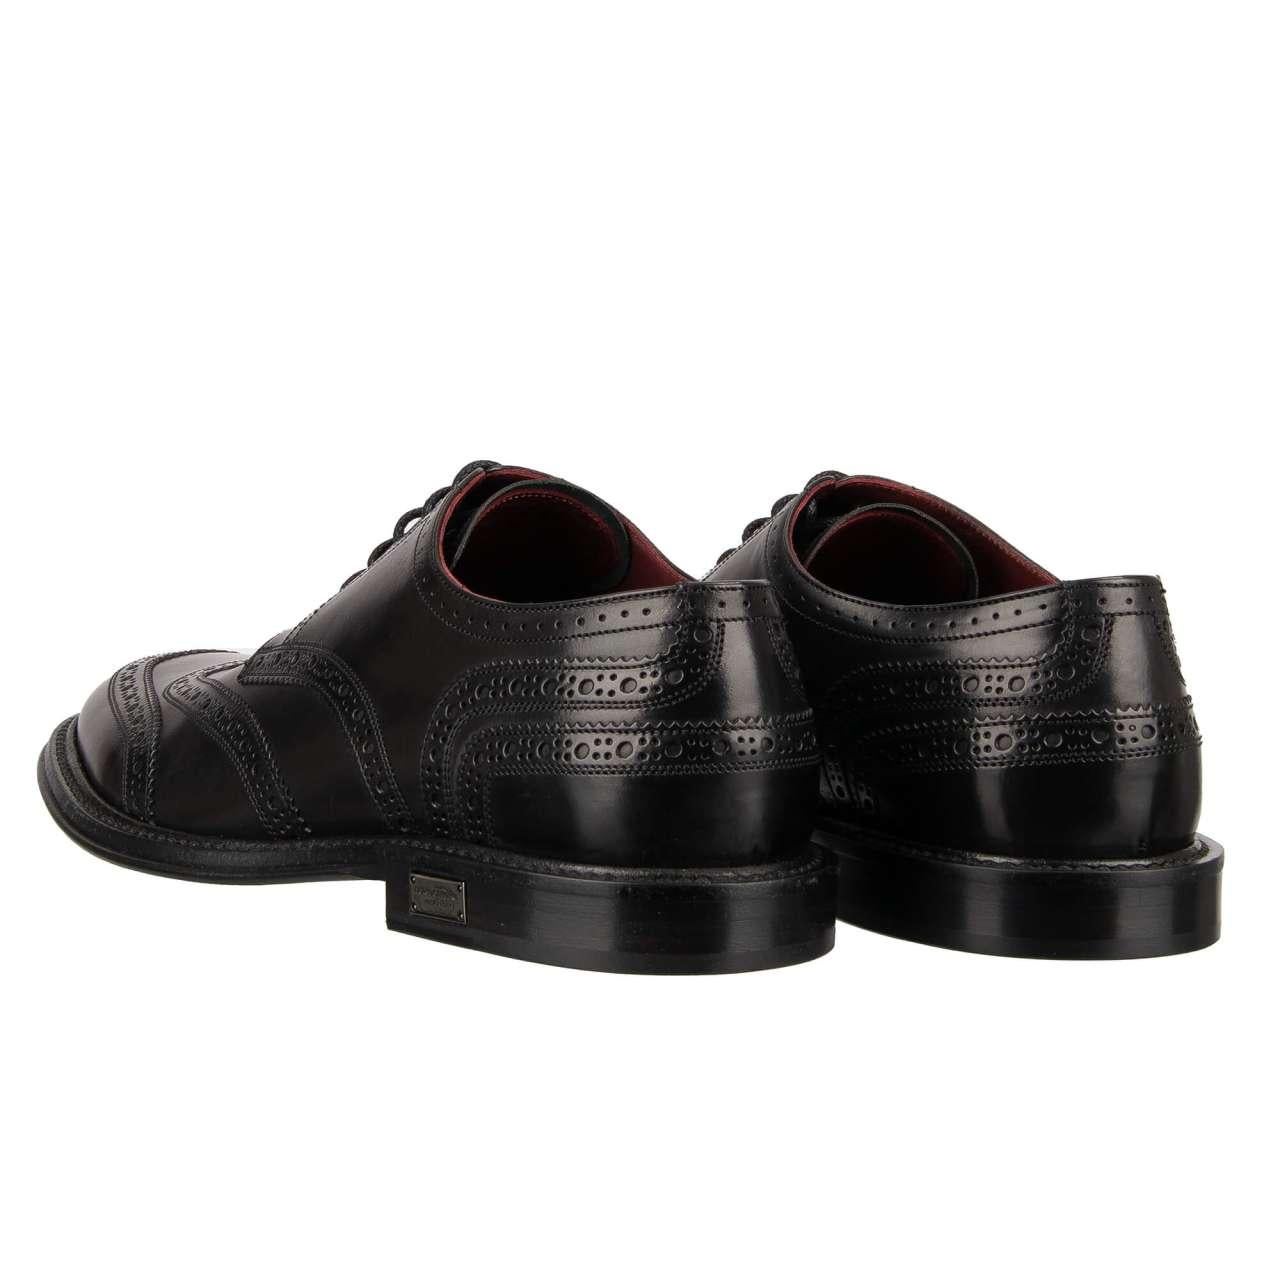 Dolce & Gabbana - DG Logo Formal Calf Leather Derby Shoes MARSALA Black EUR 44.5 For Sale 1